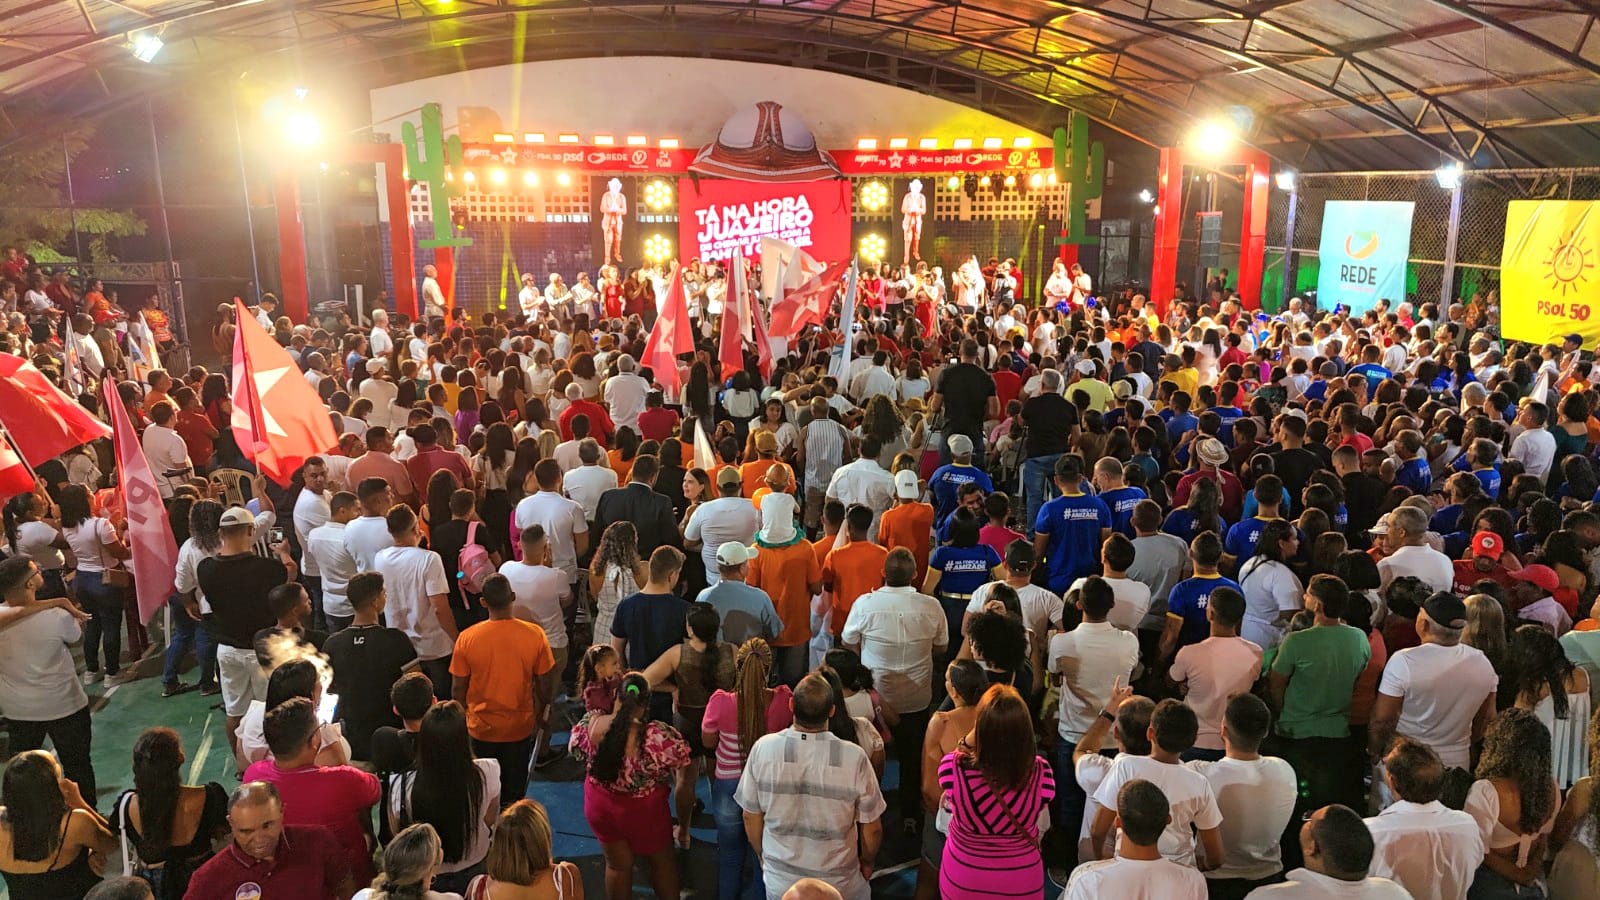 Isaac Carvalho reúne multidão em Convenção e confirma favoritismo em Juazeiro, diz assessoria